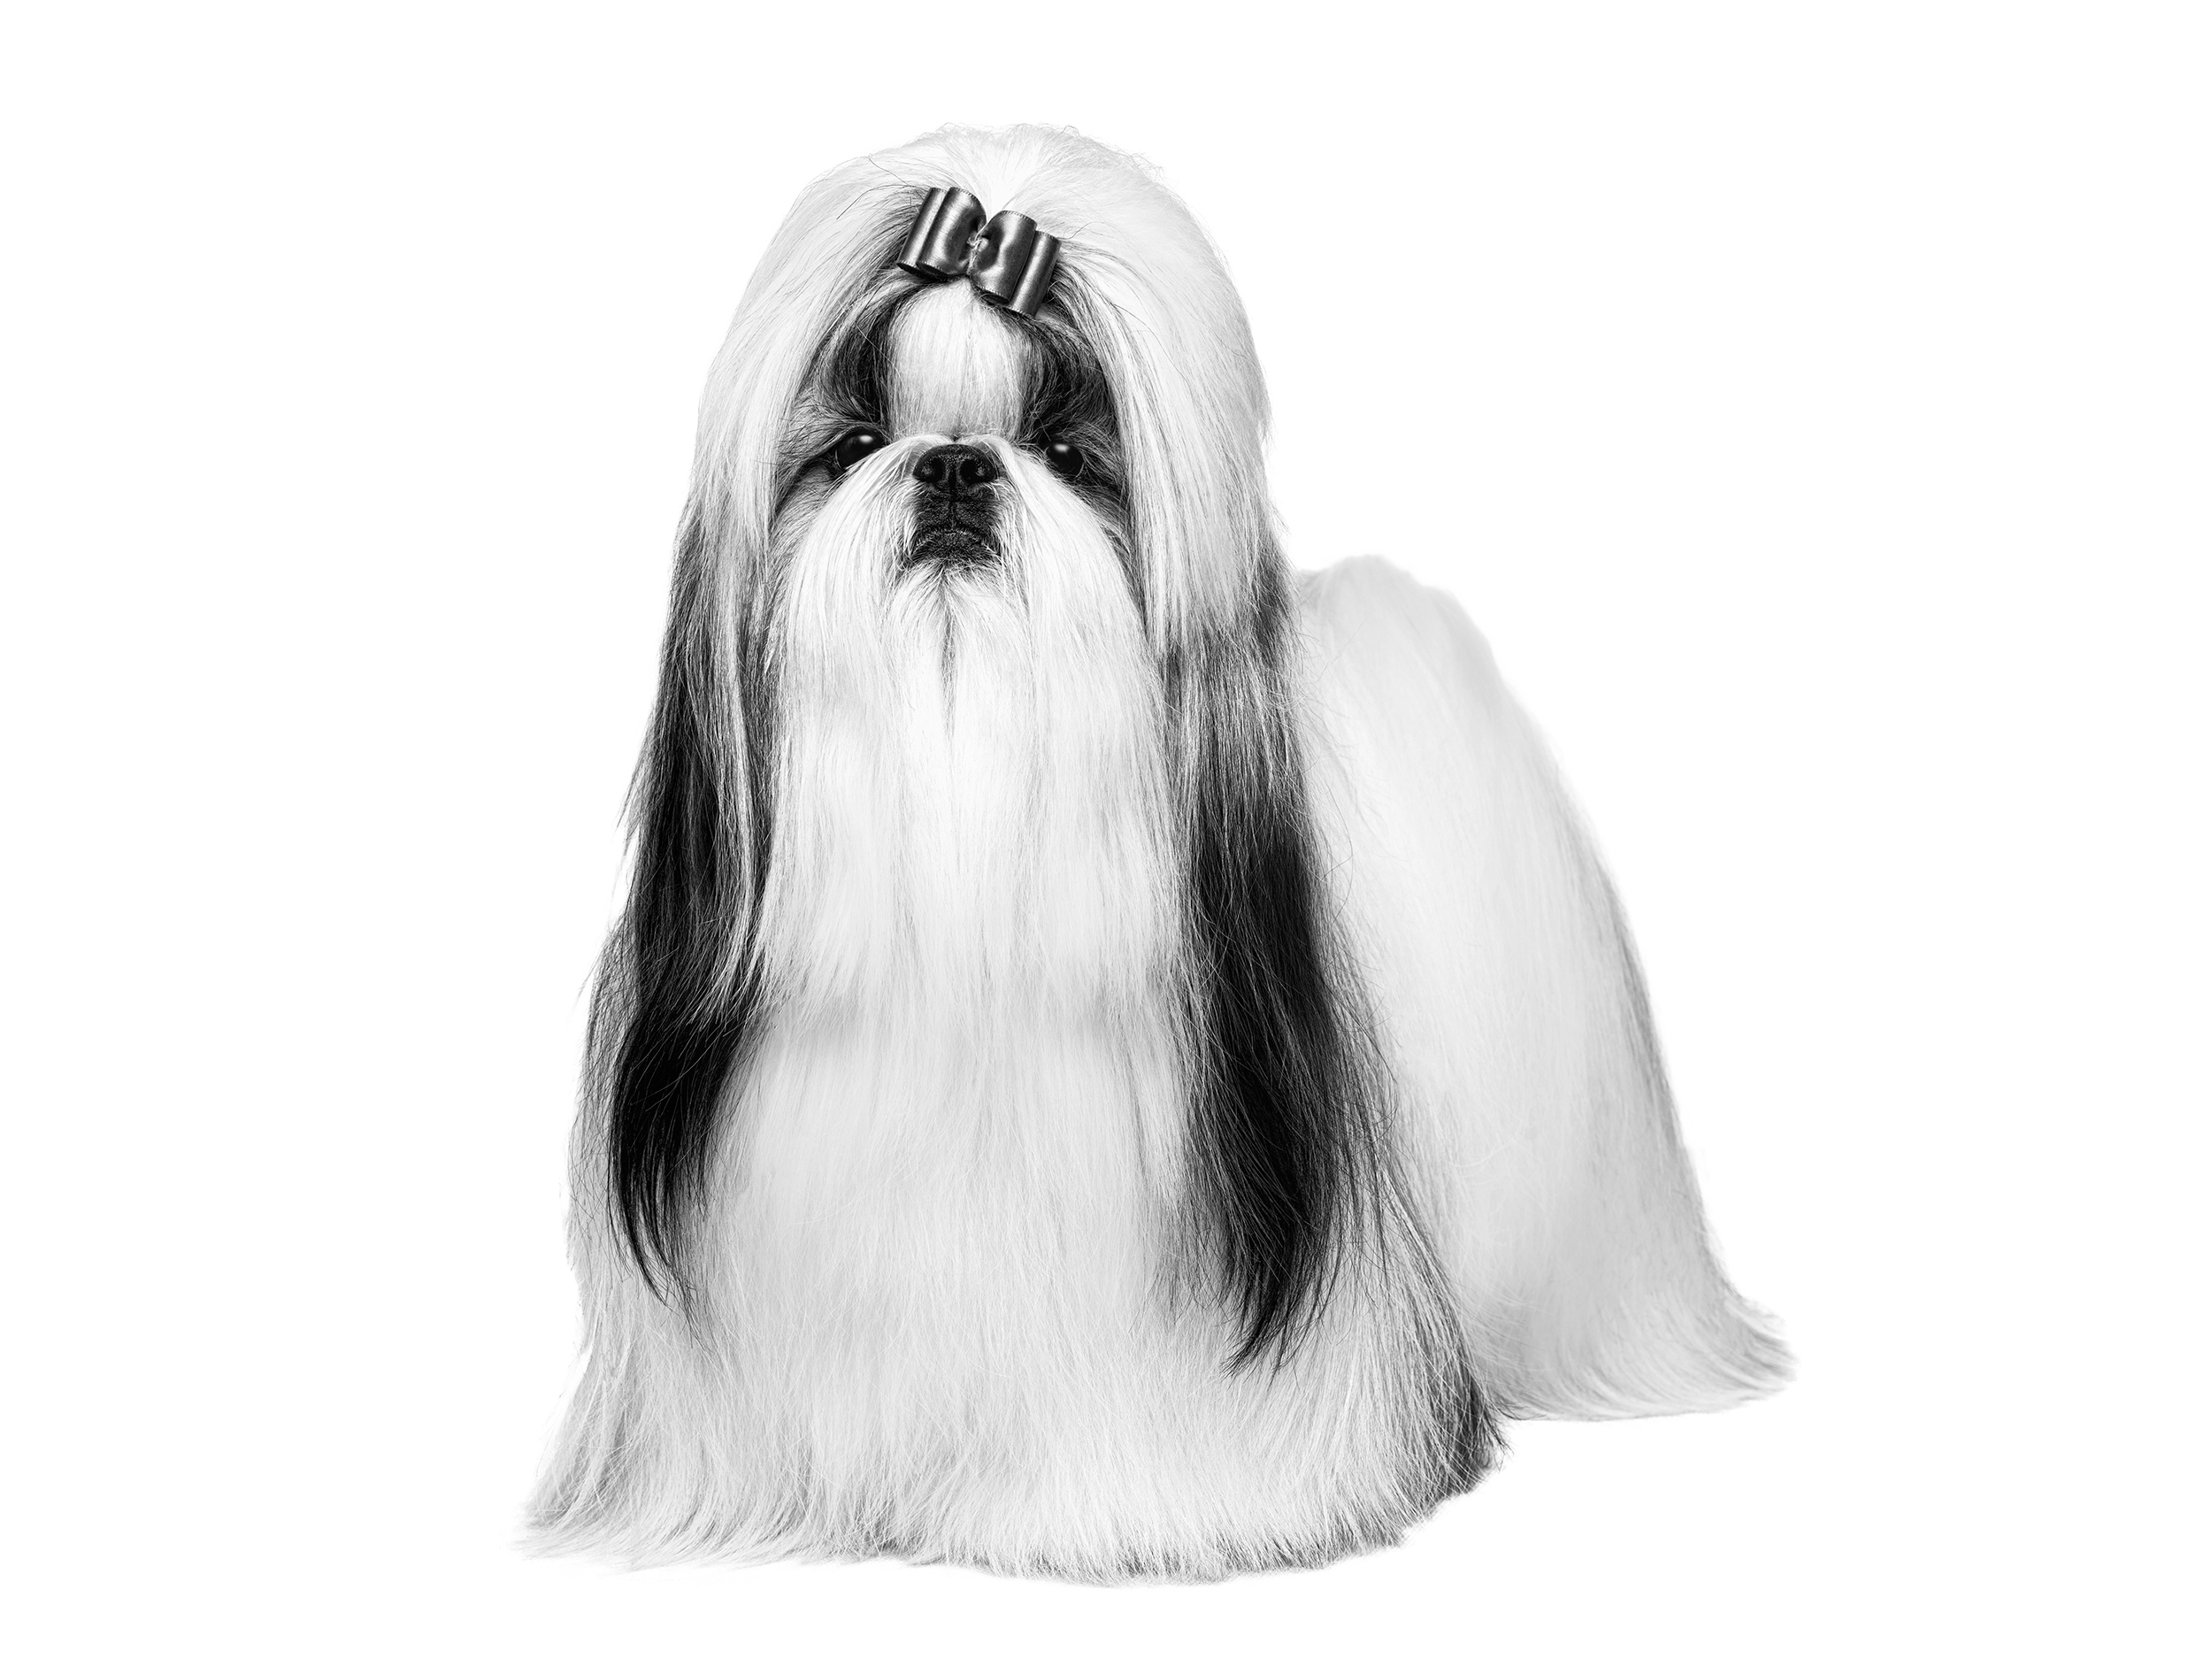 ภาพขาวดำของสุนัขโตเต็มวัยพันธุ์ชิห์สุ